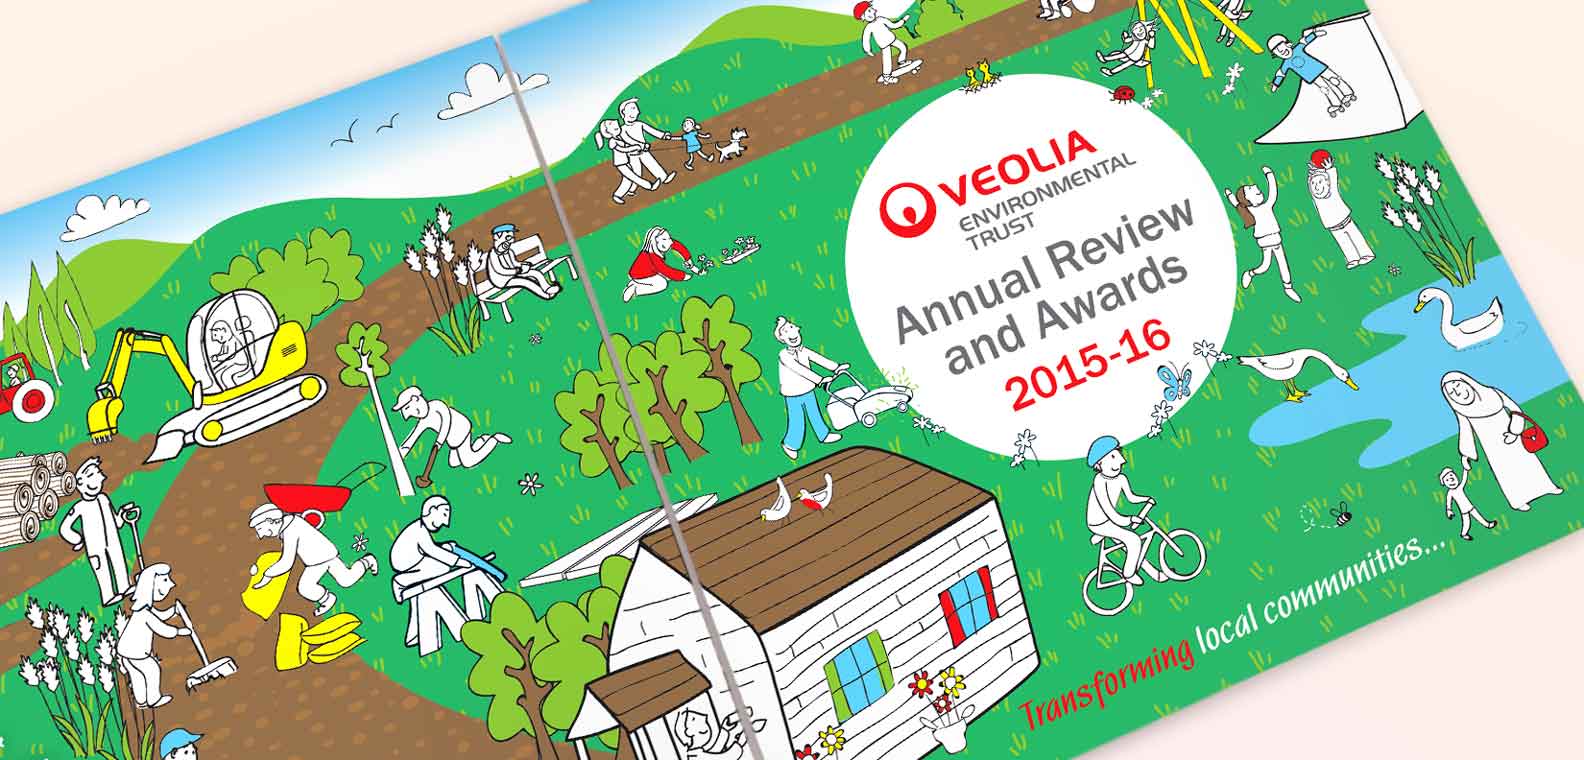 Veolia Annual Report >